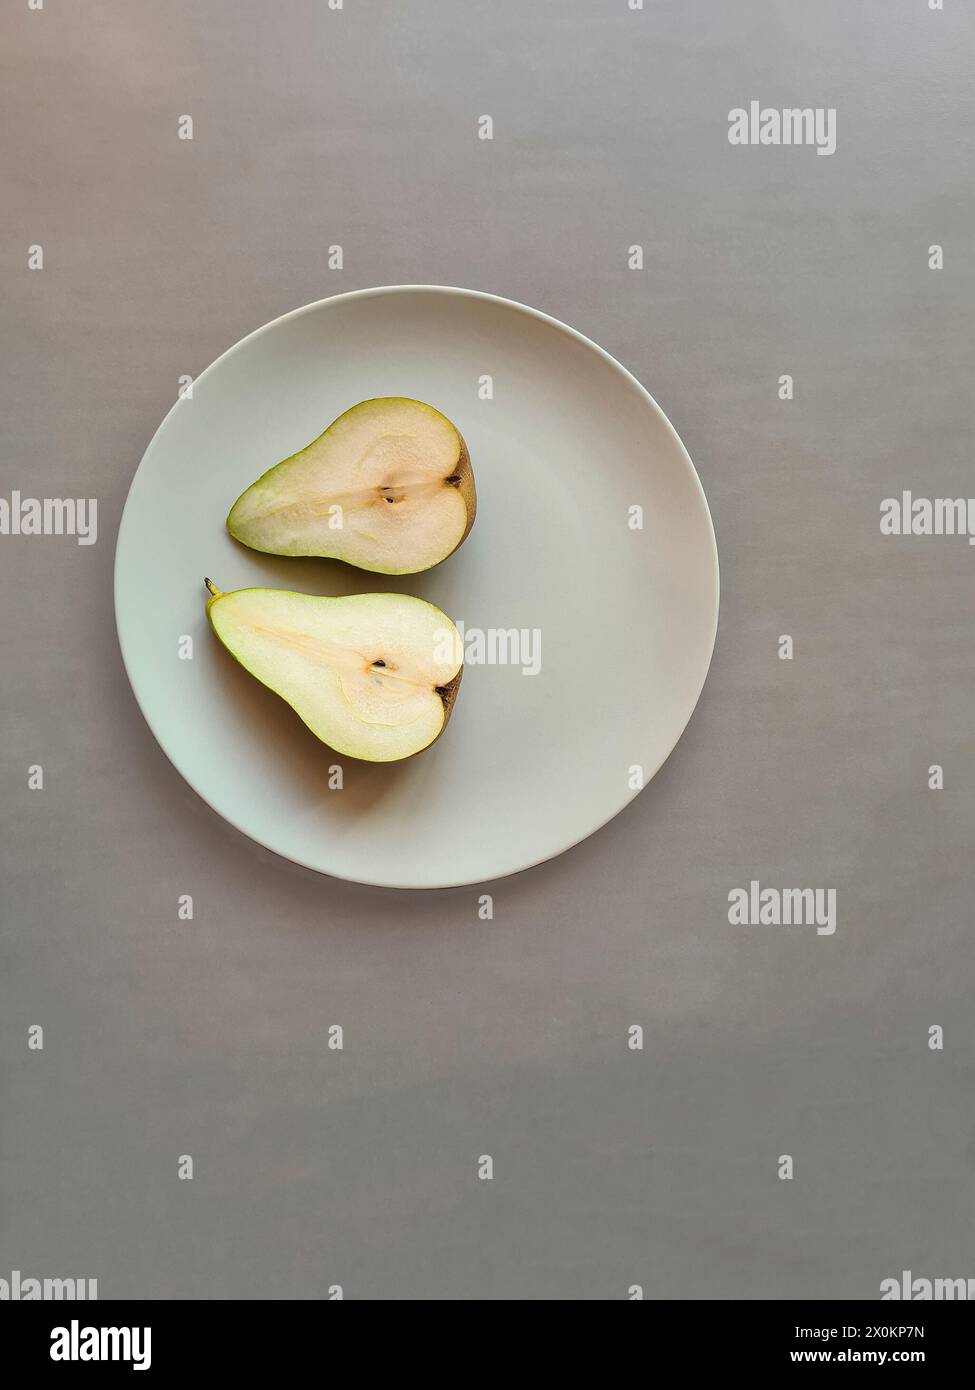 Una pera dimezzata con stelo giace con entrambe le metà su un piatto grigio chiaro, tema nutrizione naturale sana con frutta Foto Stock